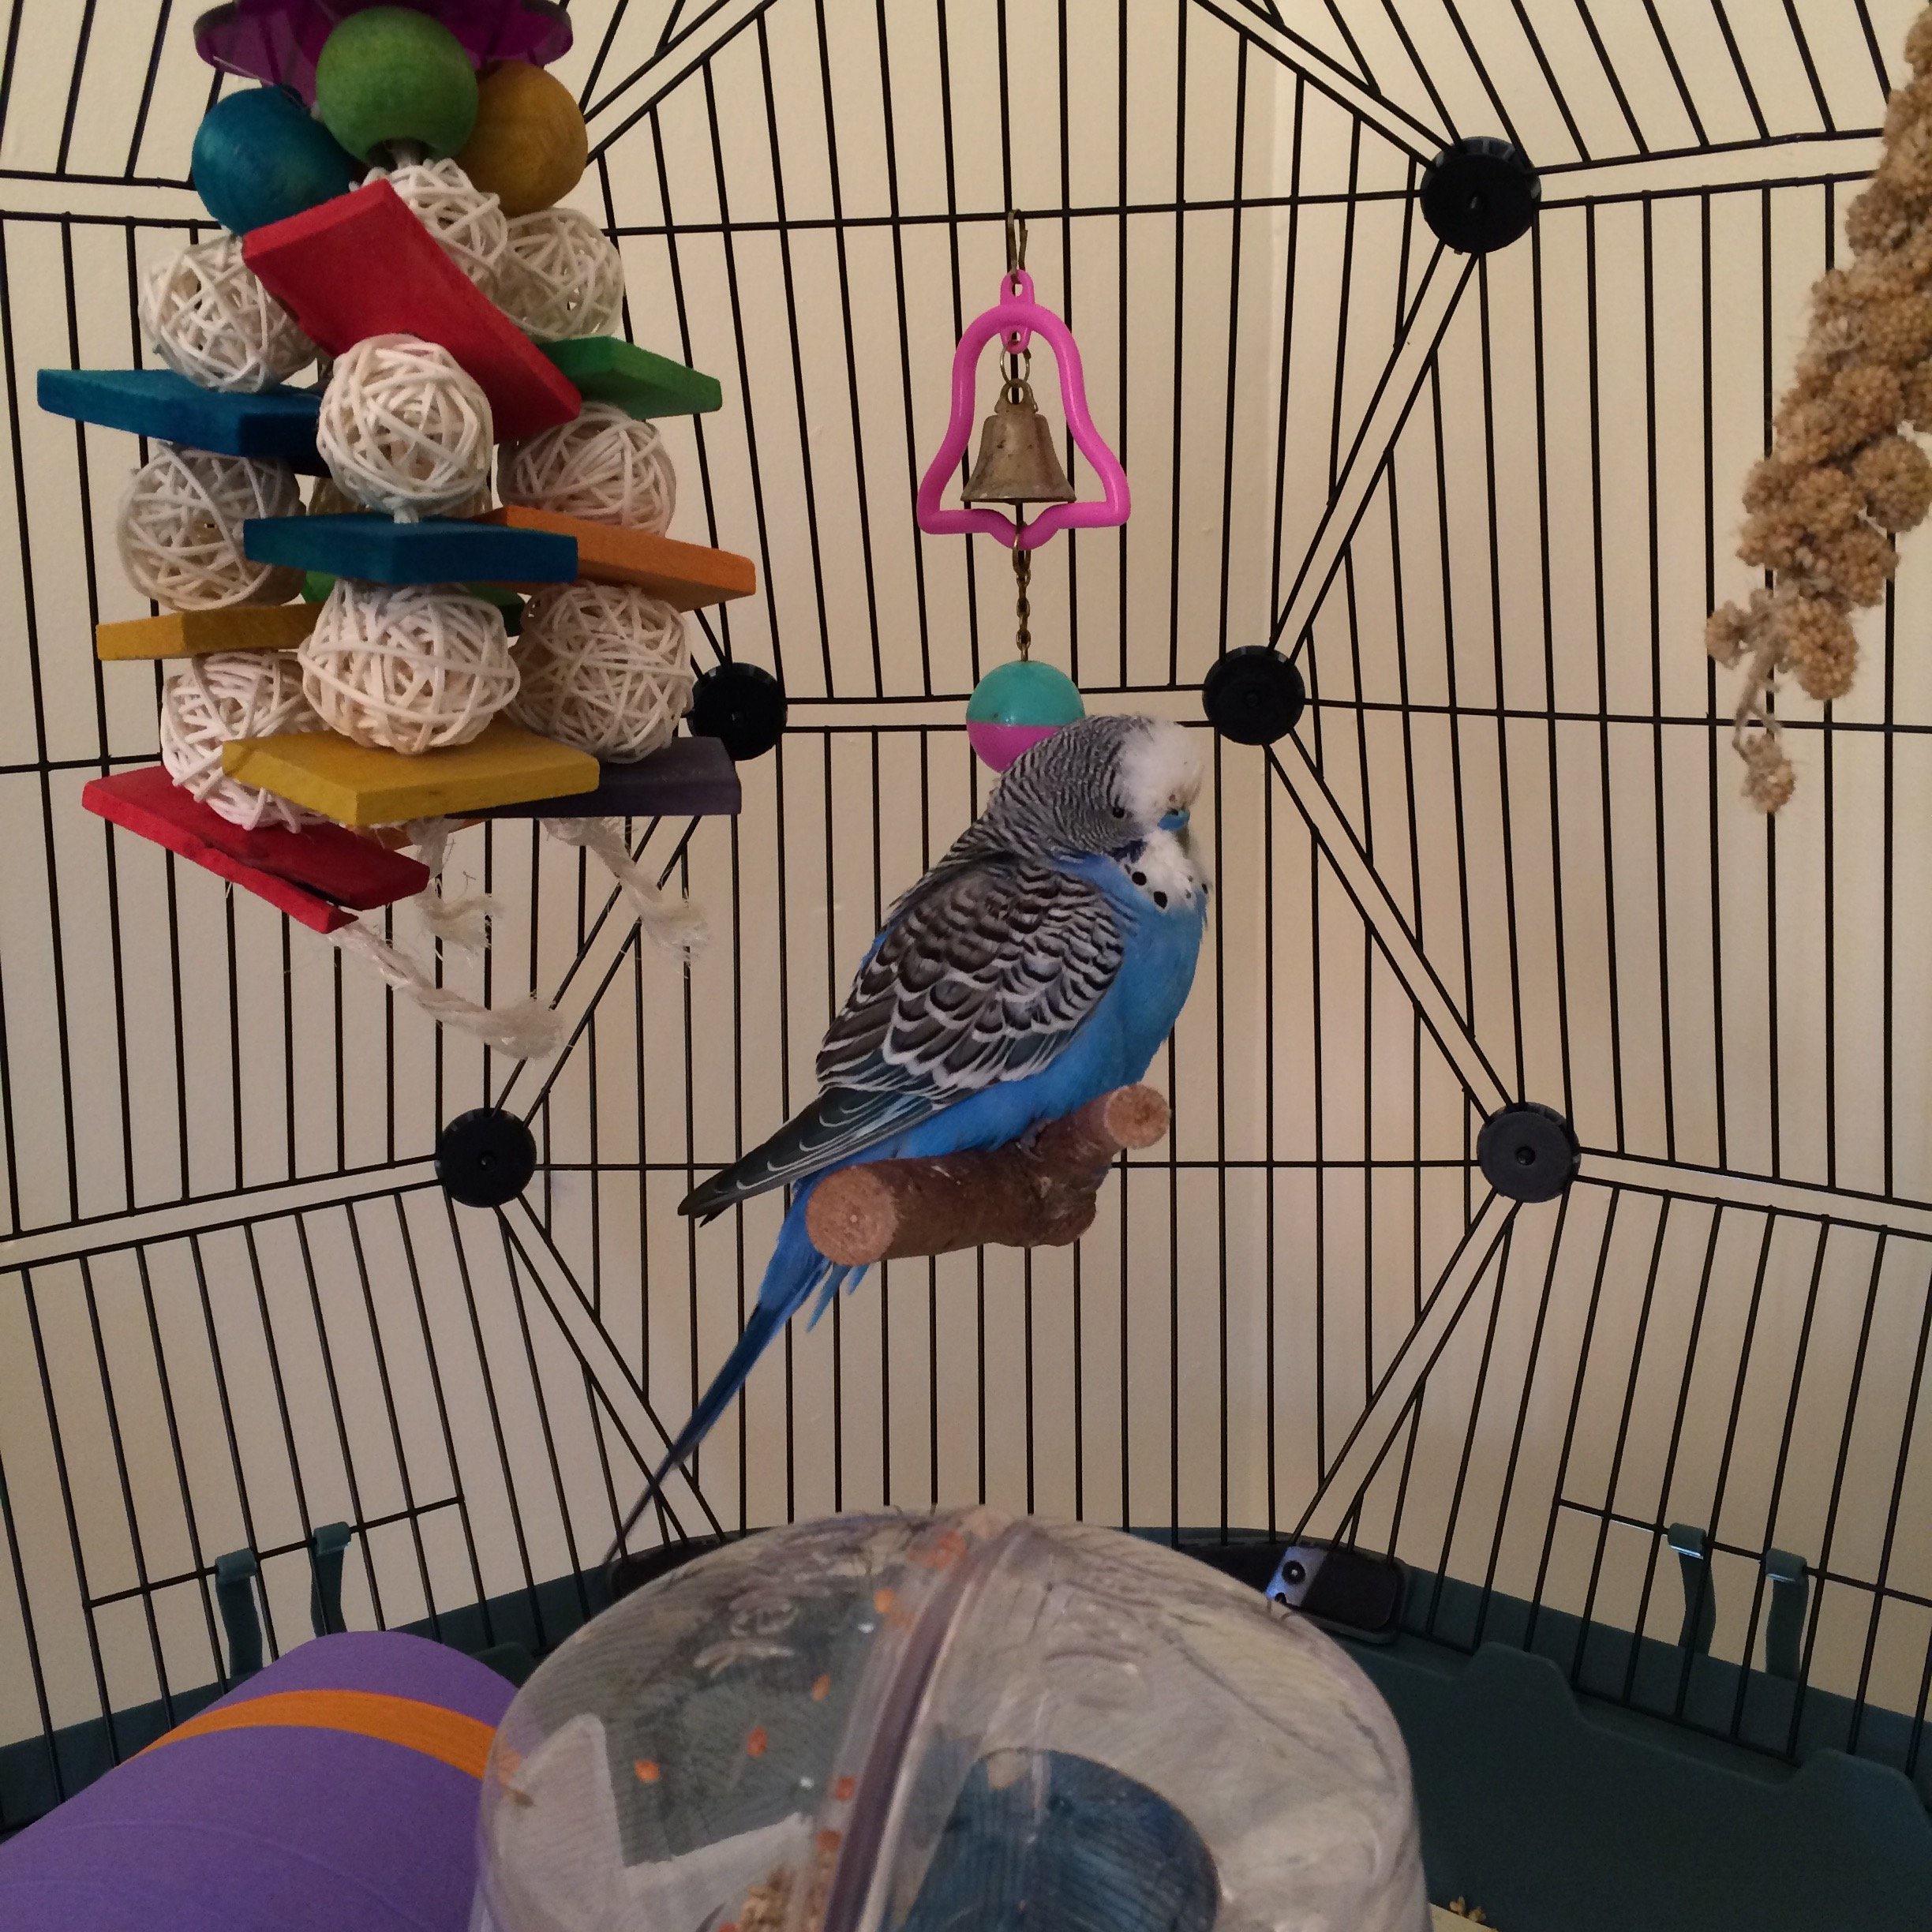 Mangeoire à oiseaux pour l'observation des cages pour perruches